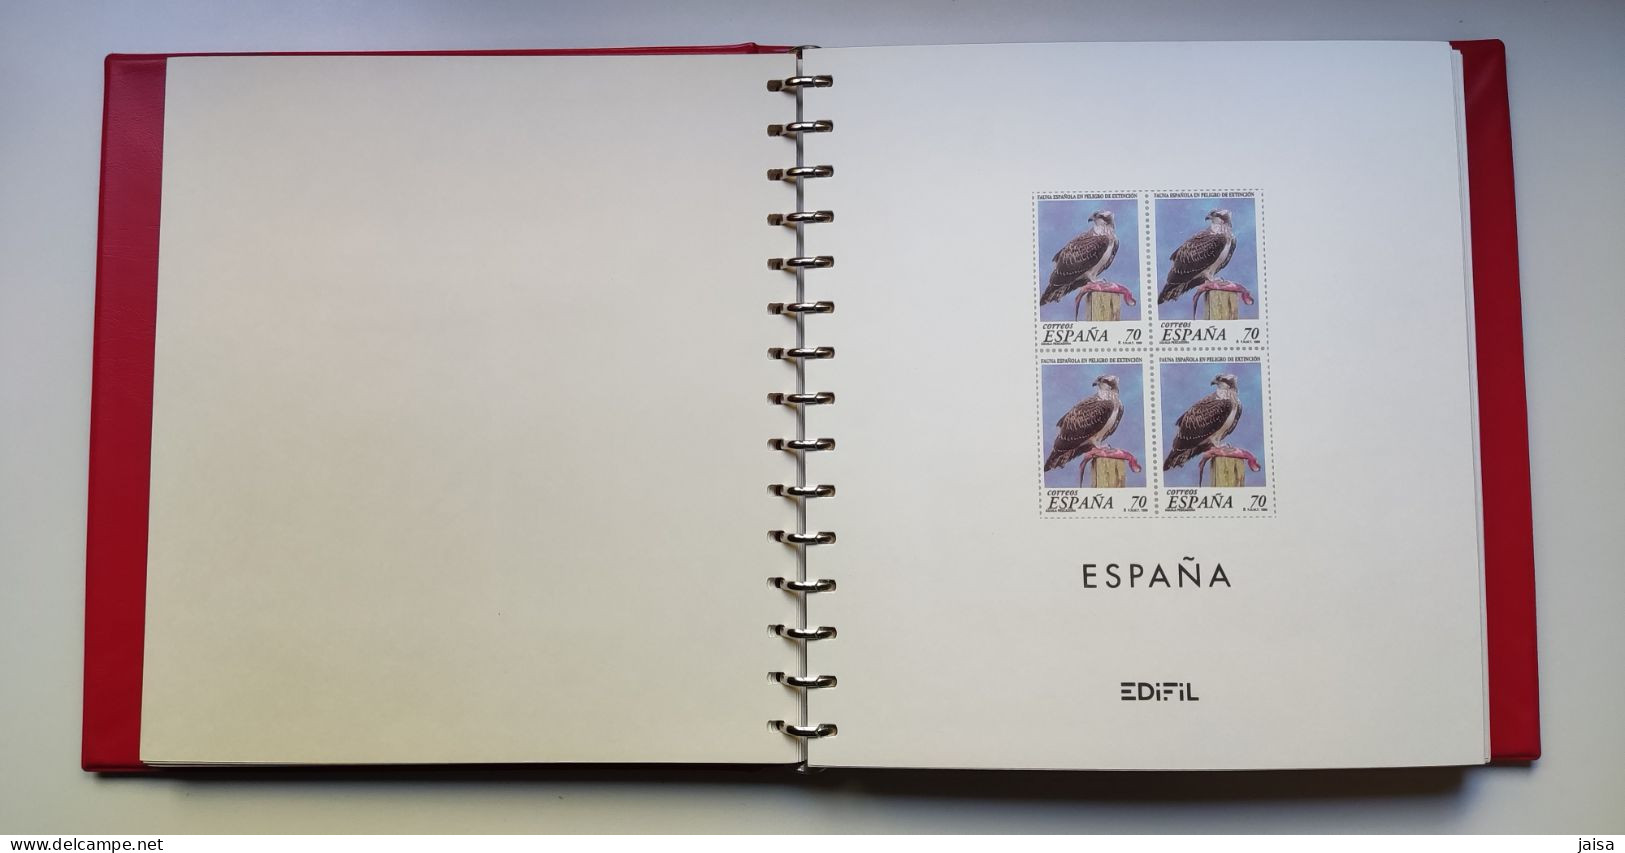 ESPAÑA. Álbumes y suplementos Edifil 1950 - 2001 en bloque de cuatro. Muy bien cuidados.